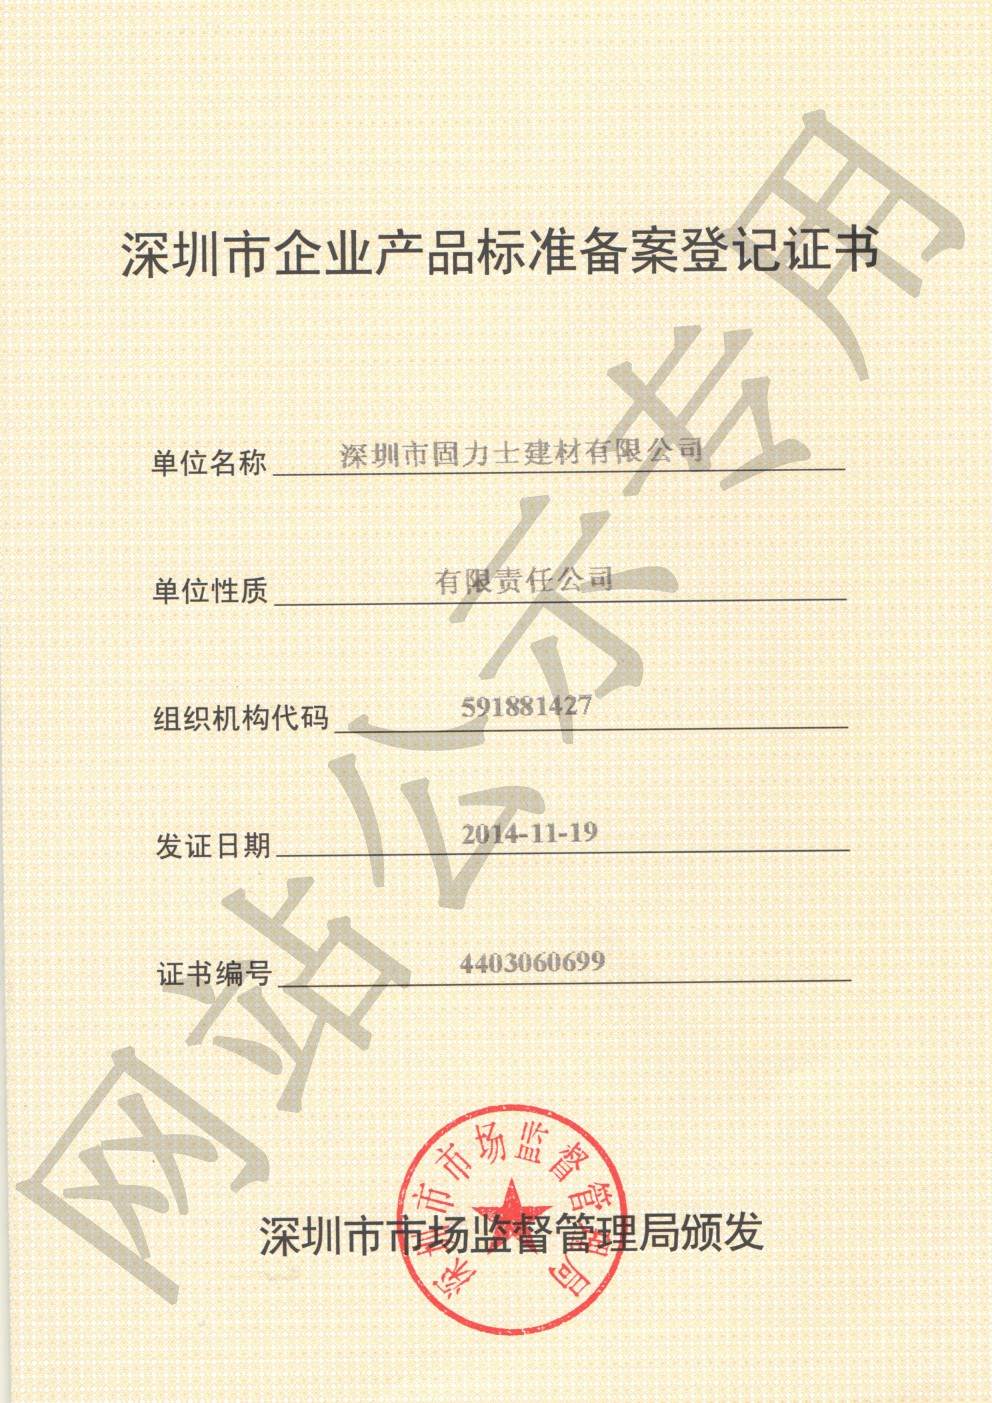 古田企业产品标准登记证书